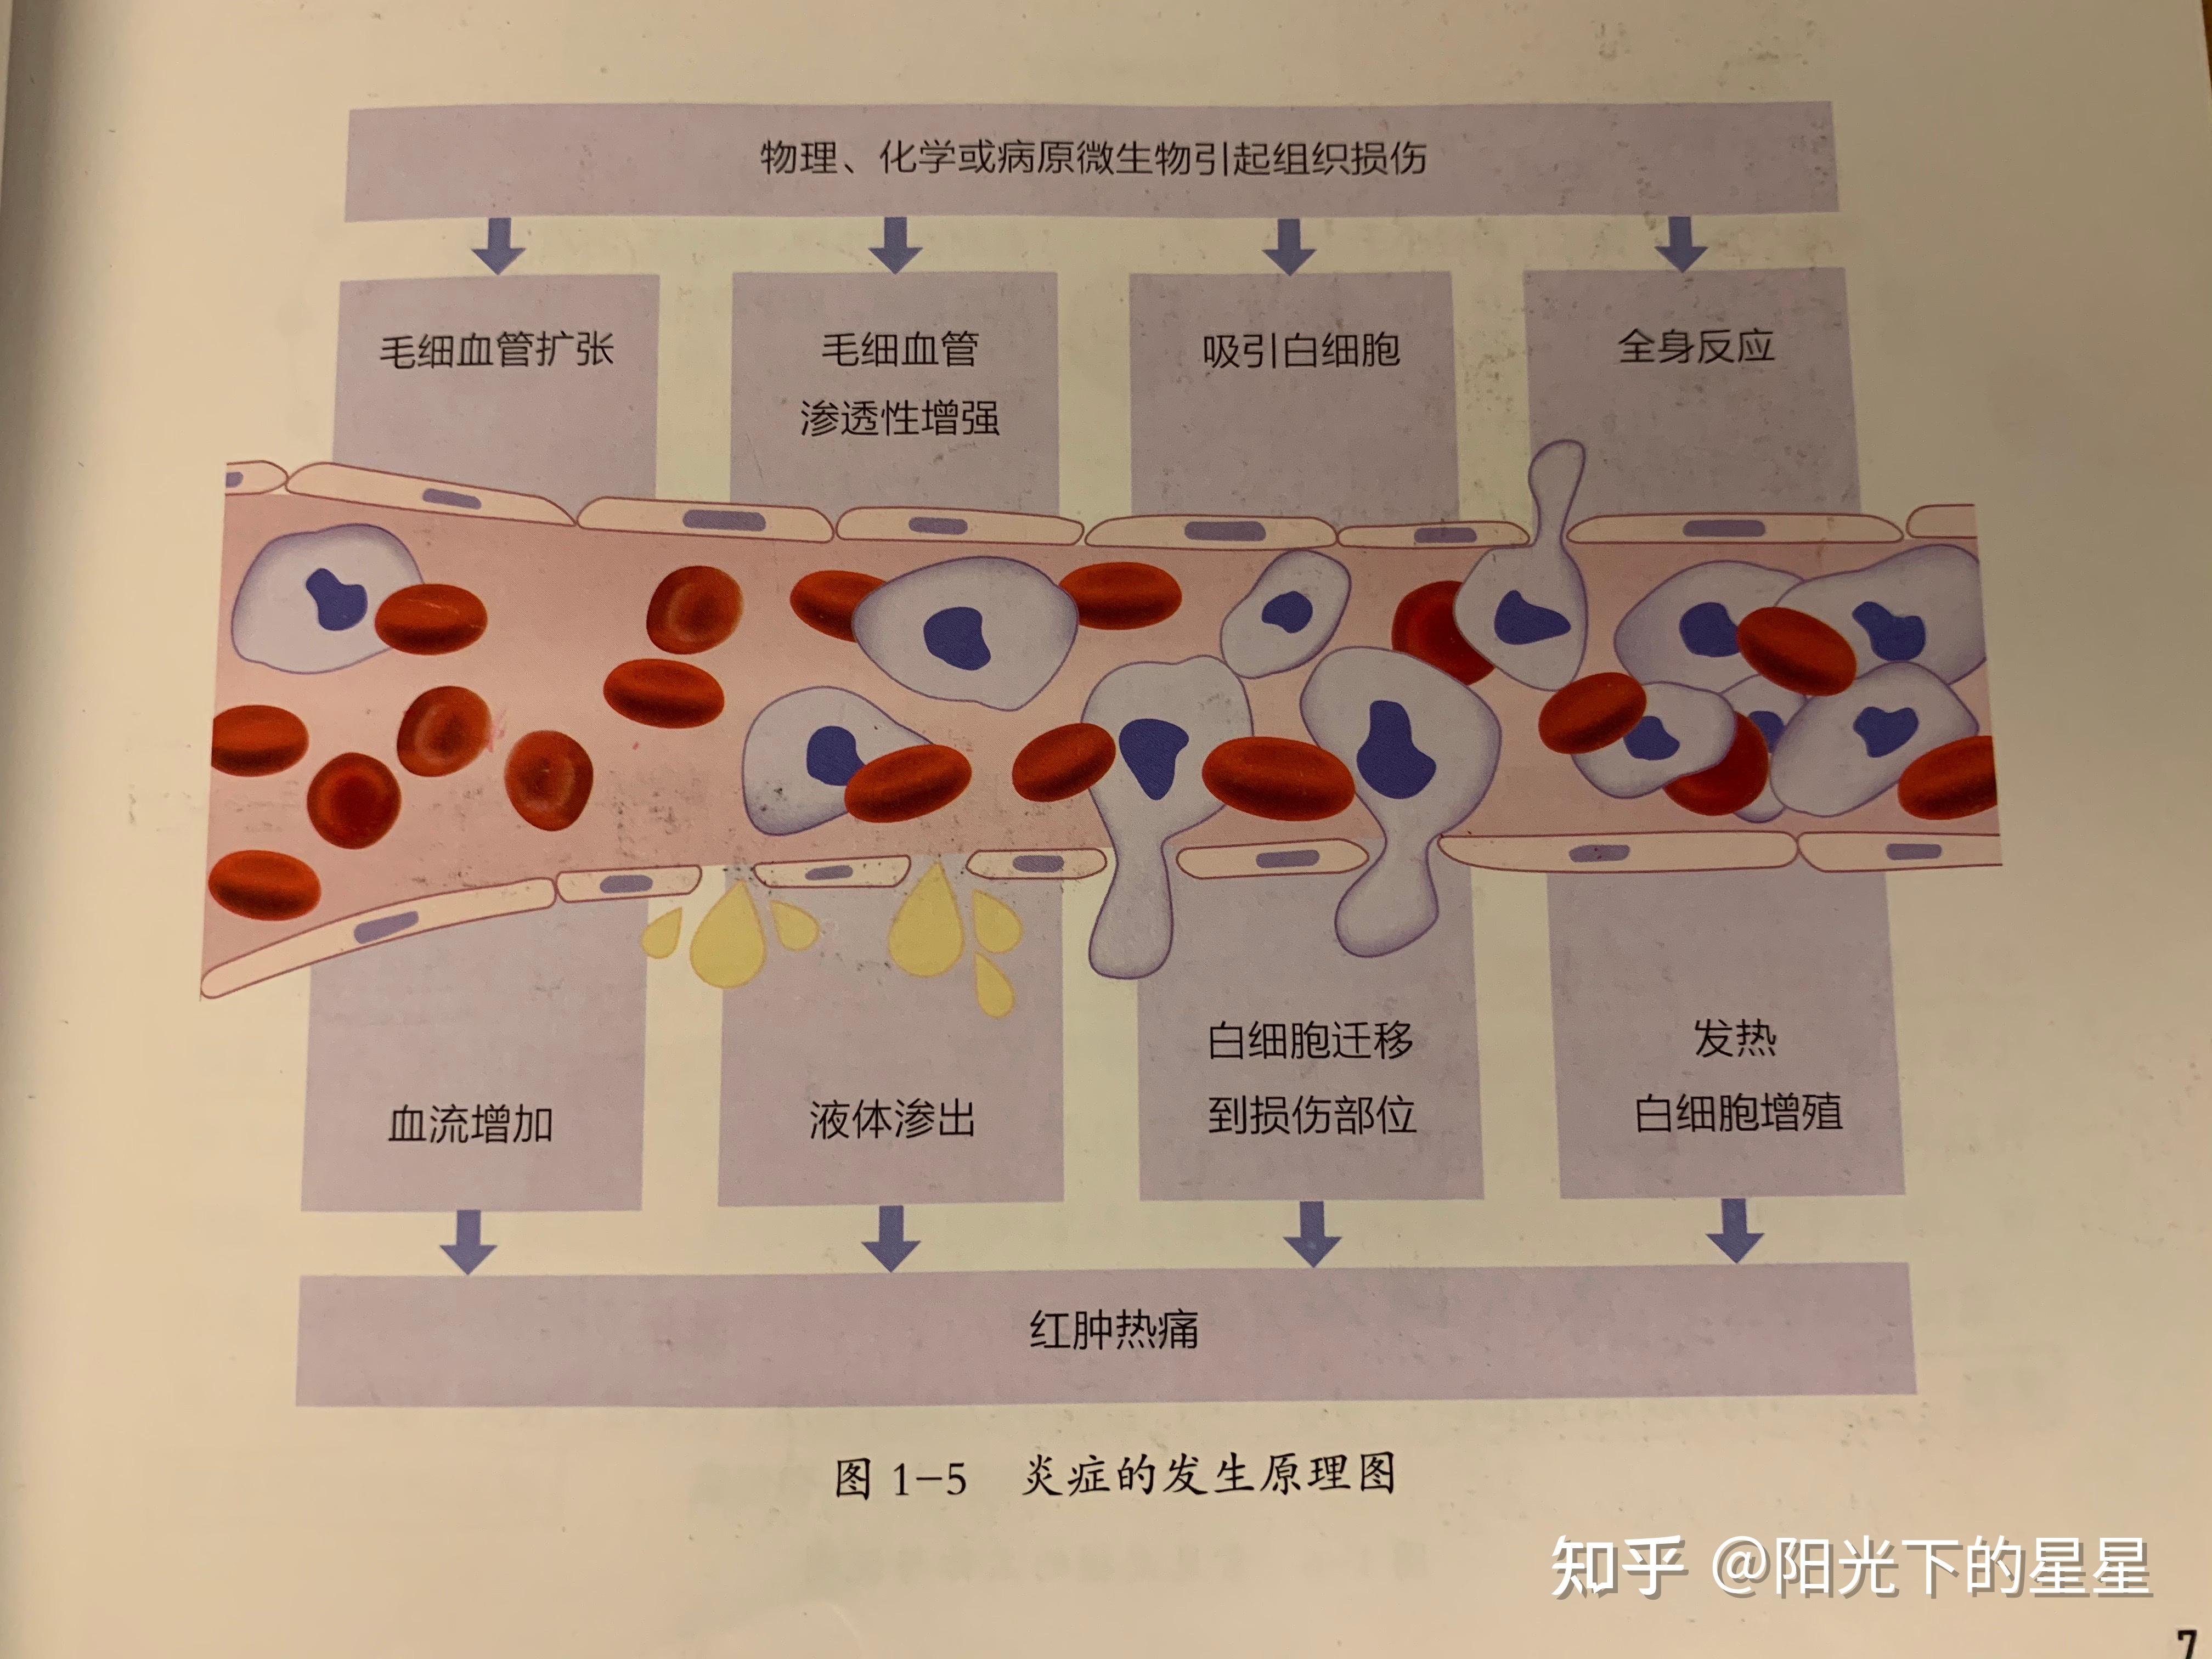 在炎症中,血管最终表现为扩张,血细胞(特别是白细胞) 游出血管,进入